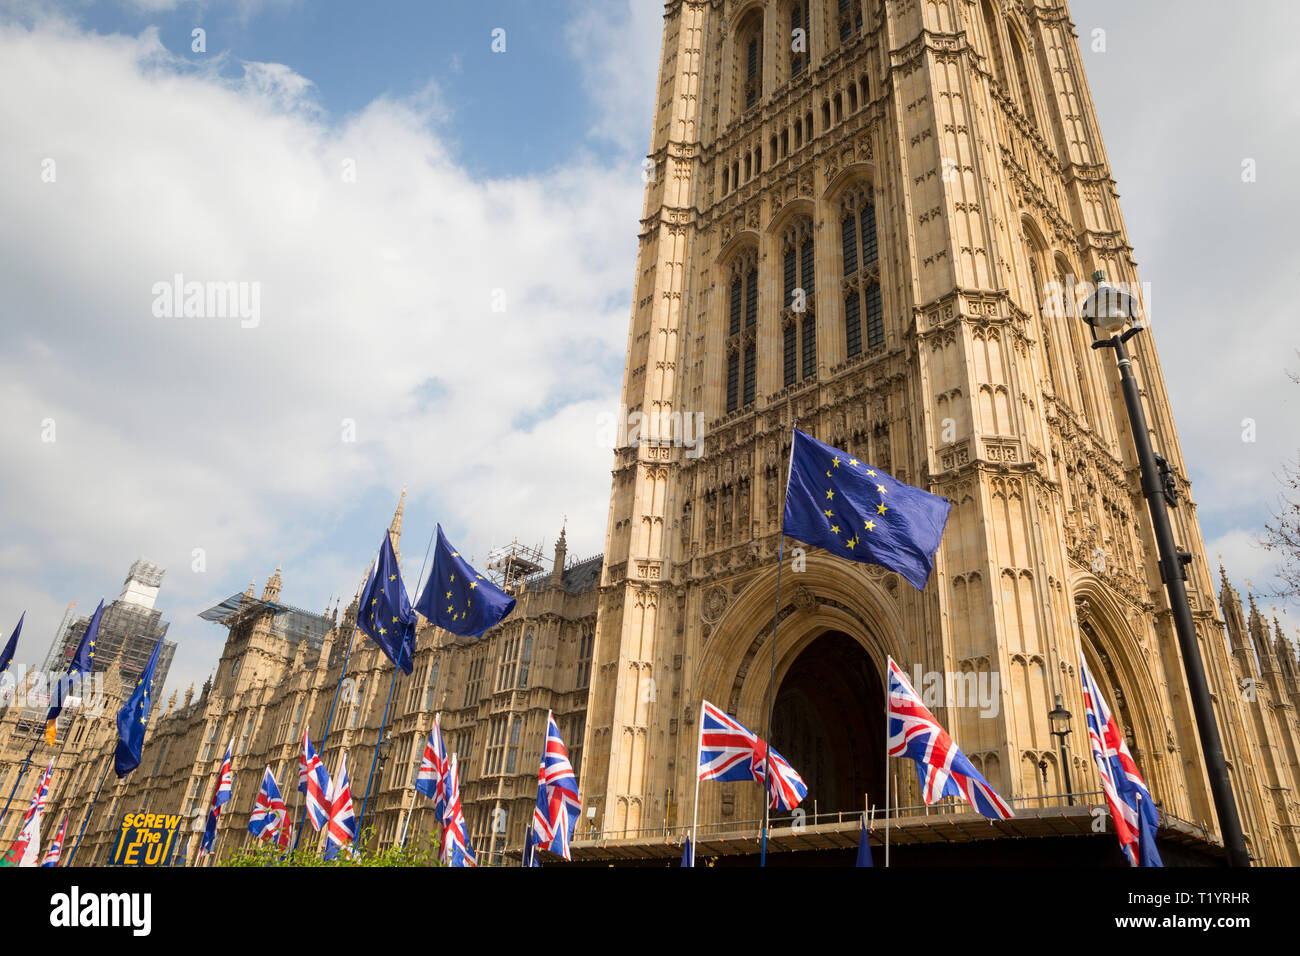 Als MPs auf, wie man mit Brexit parlamentarische Verfahren Fortschritte entscheiden, der EU und der Union Jack Fahnen wehen vor dem britischen Parlament in Westminster, am 28. März 2019 in London, England Stockfoto